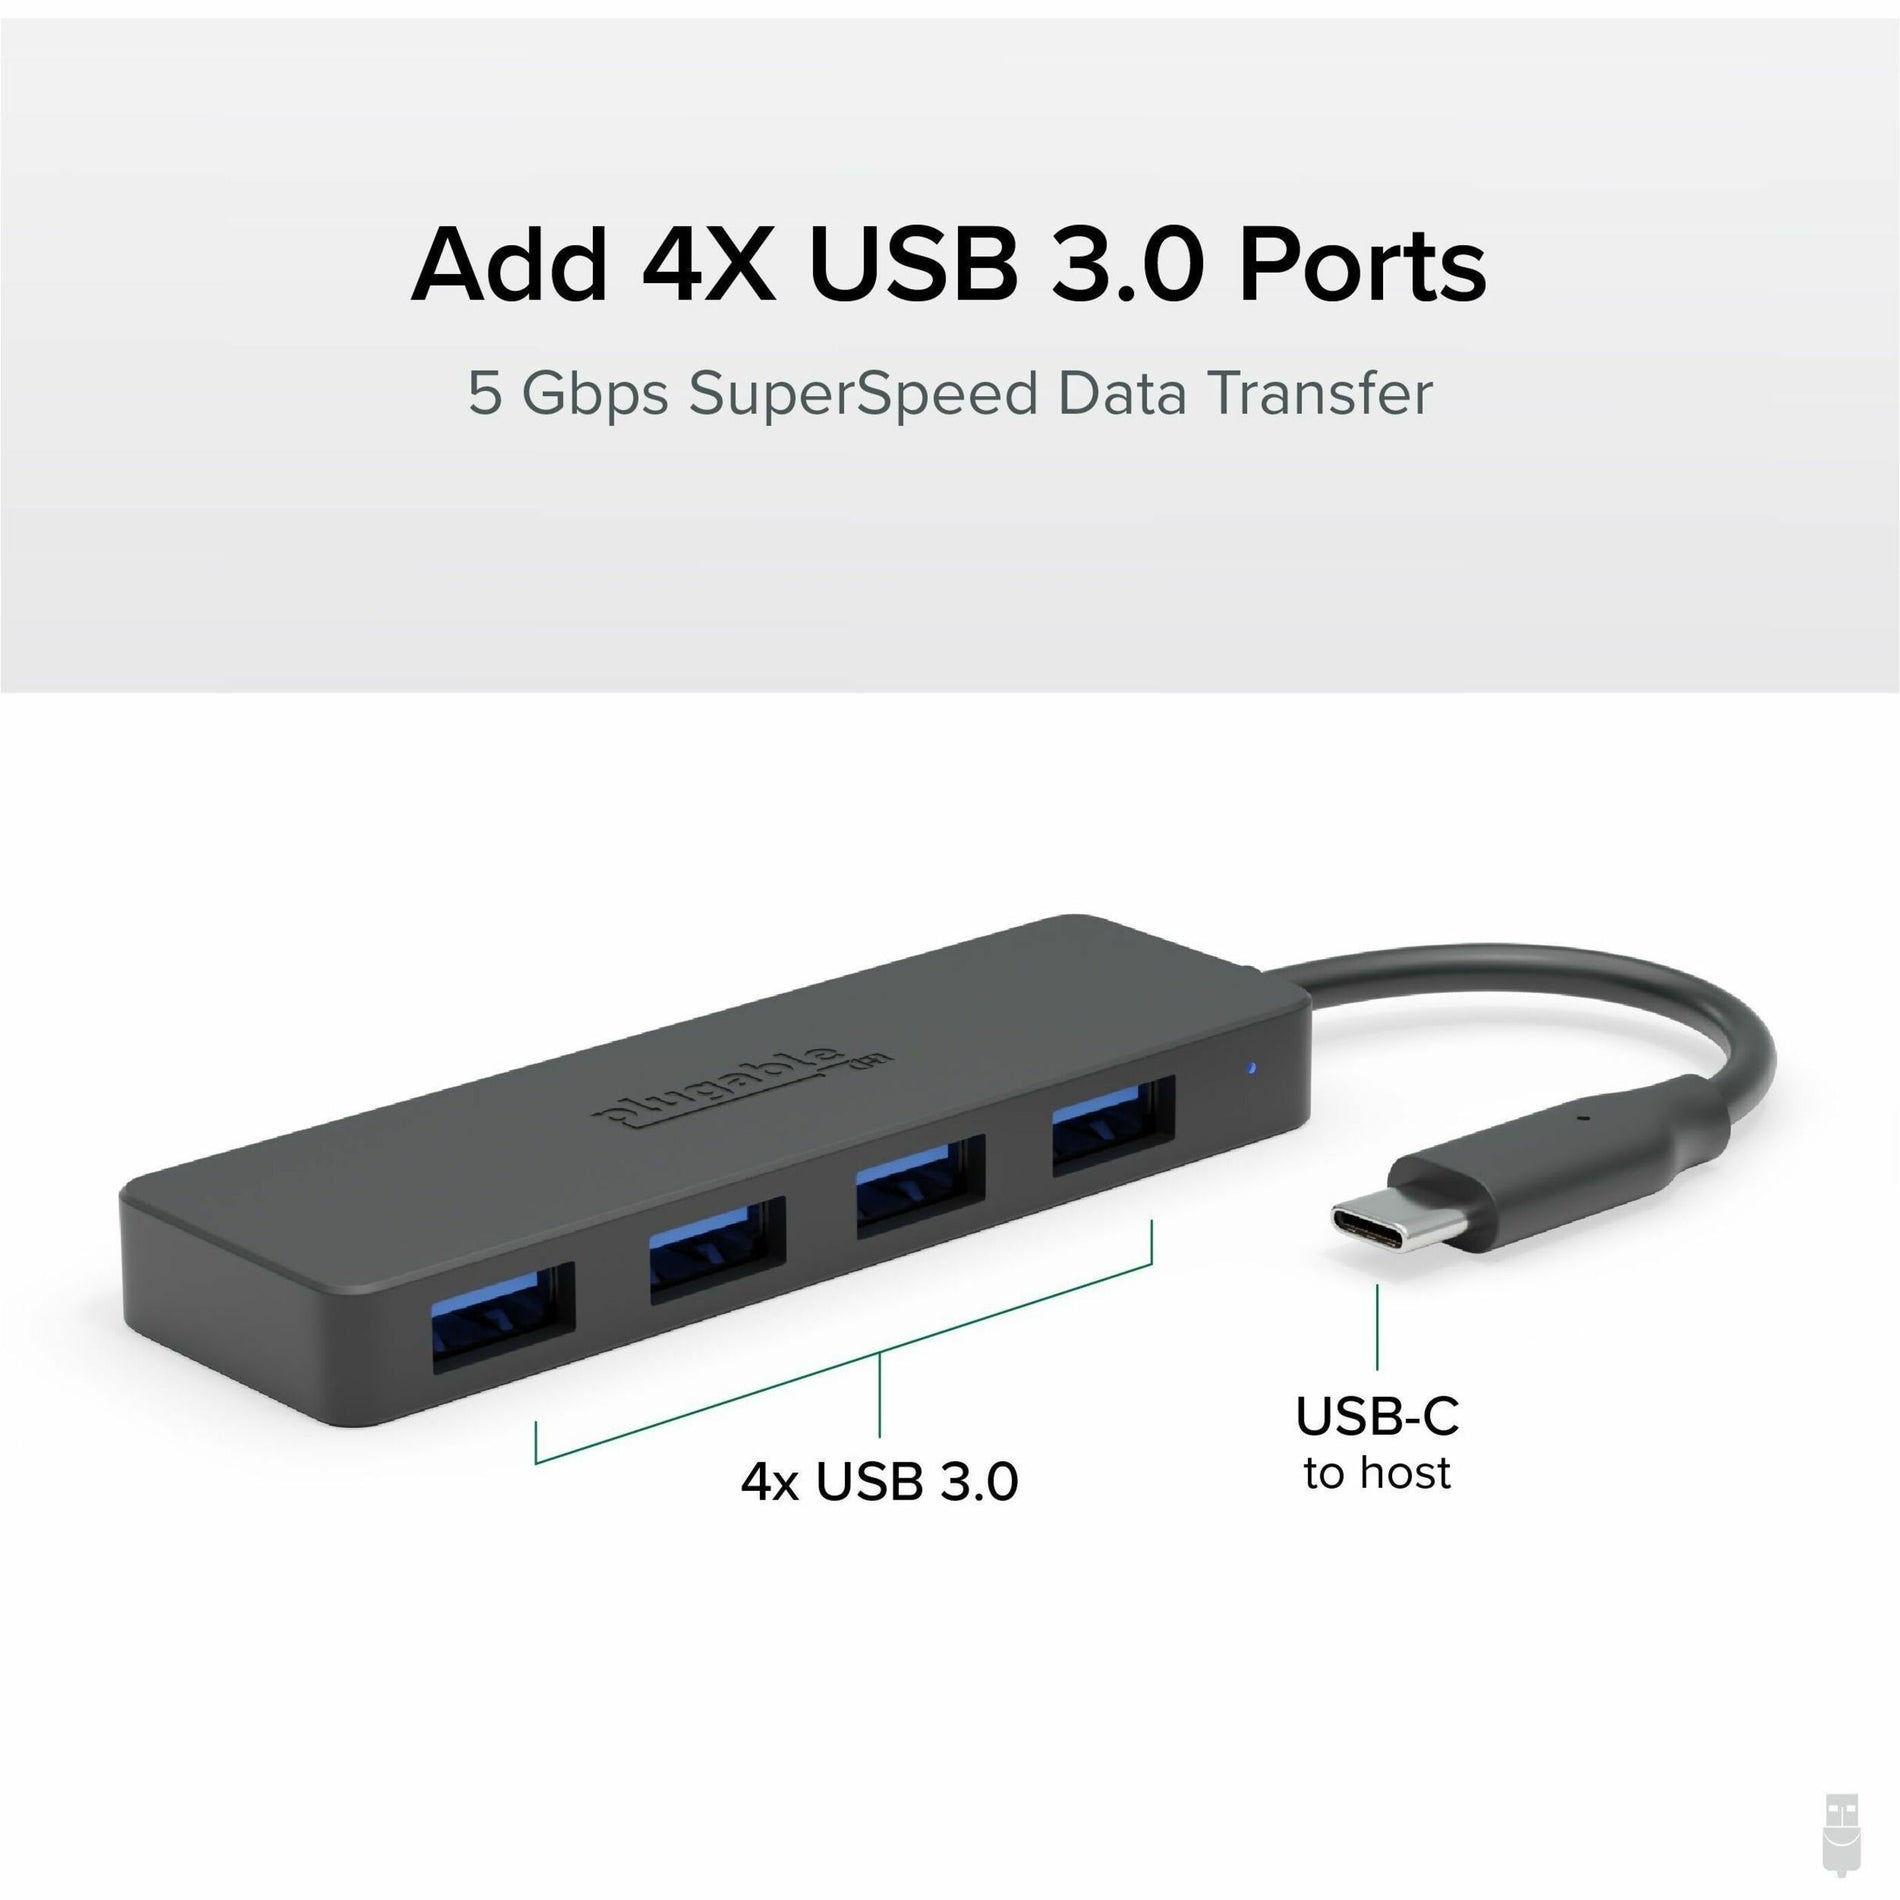 Plugable USBC-HUB4A USB-hub 4 USB 3.0-poorten zwart.